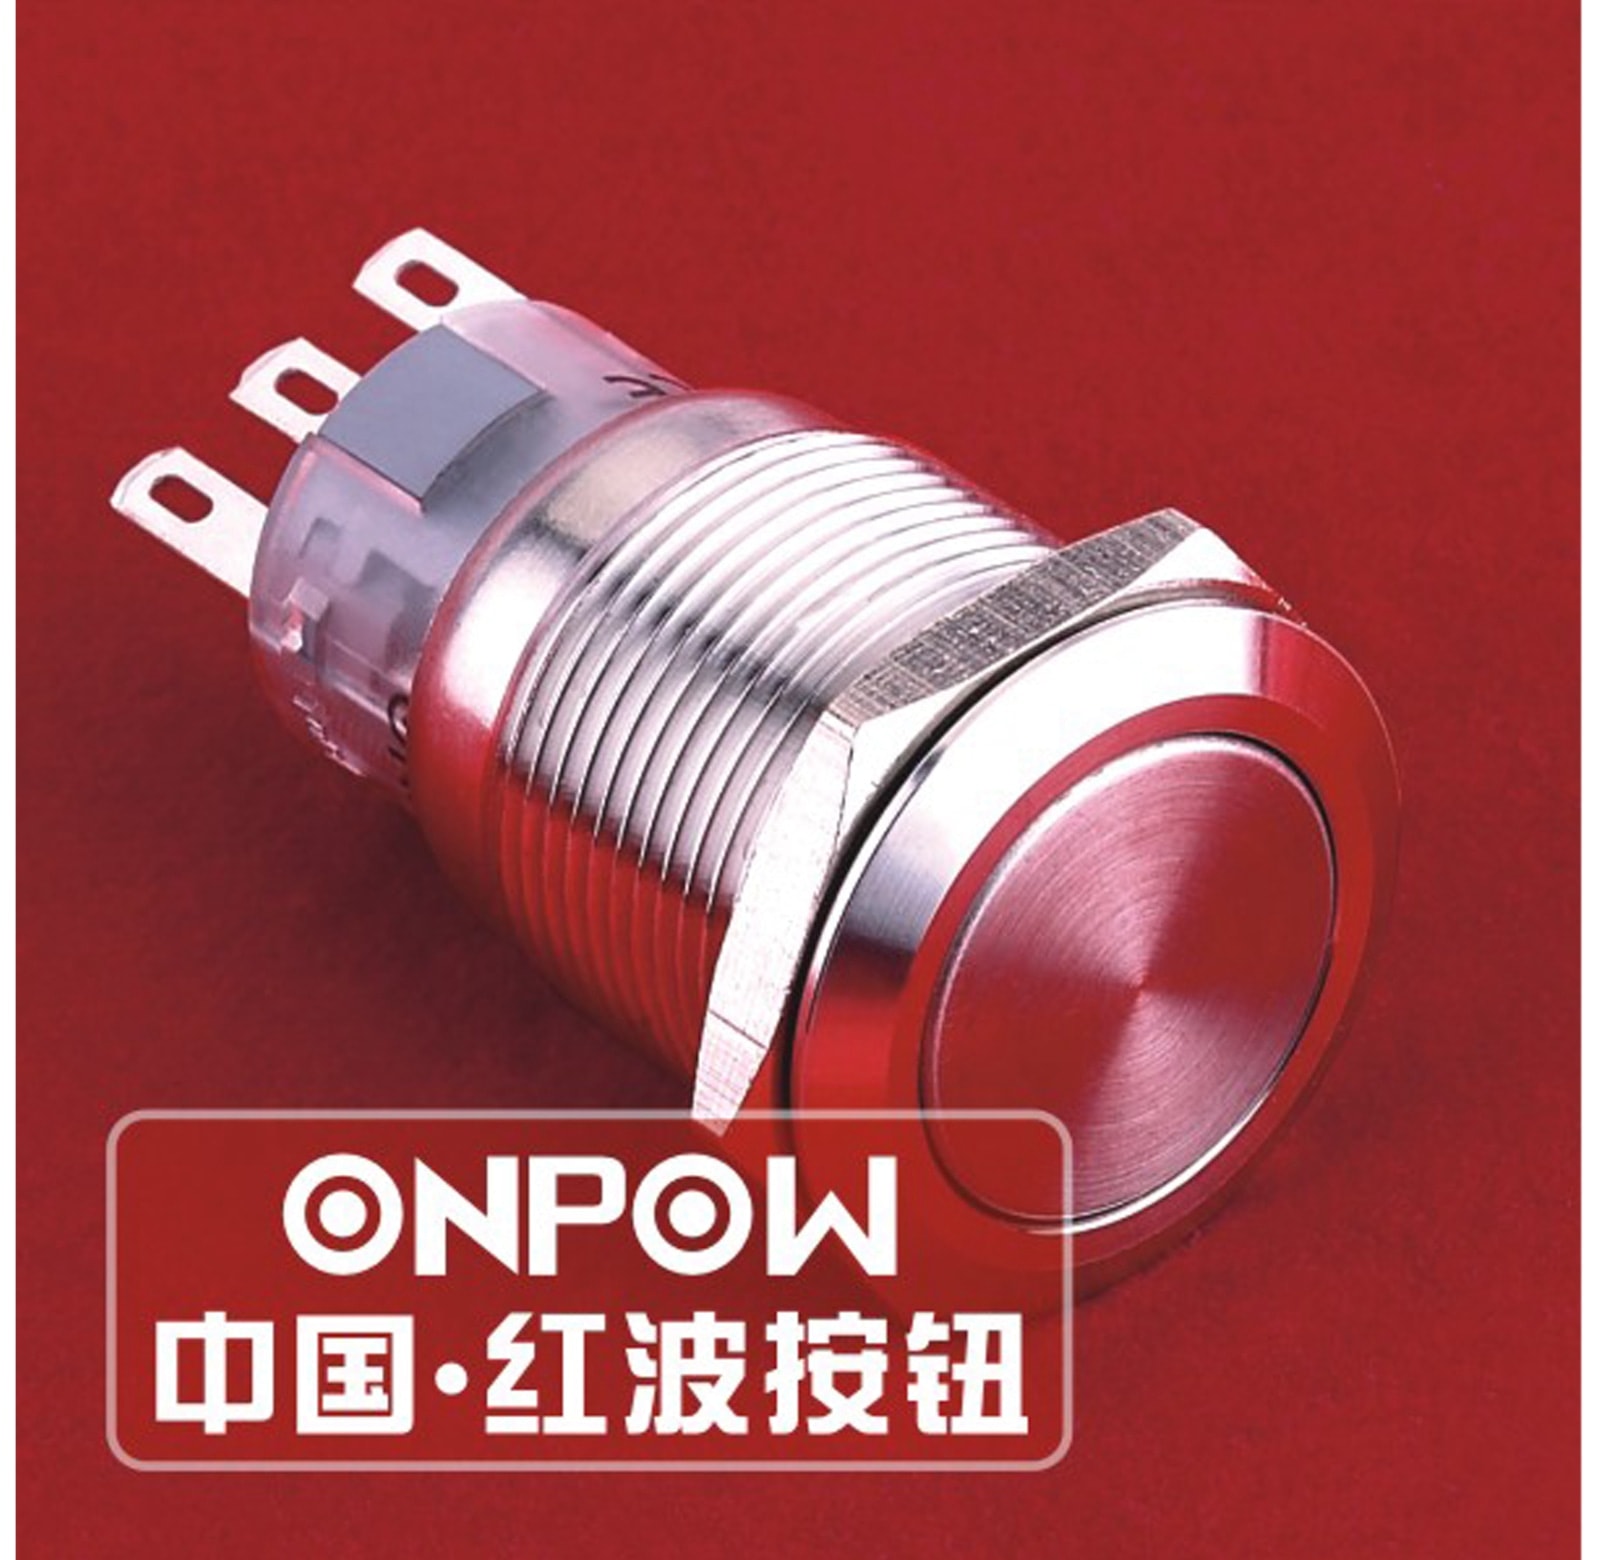 ONPOW Schalter, 24 V/DC, 1x Off/On, Lötanschluss, flach rund, Edelstahl, 19 mm